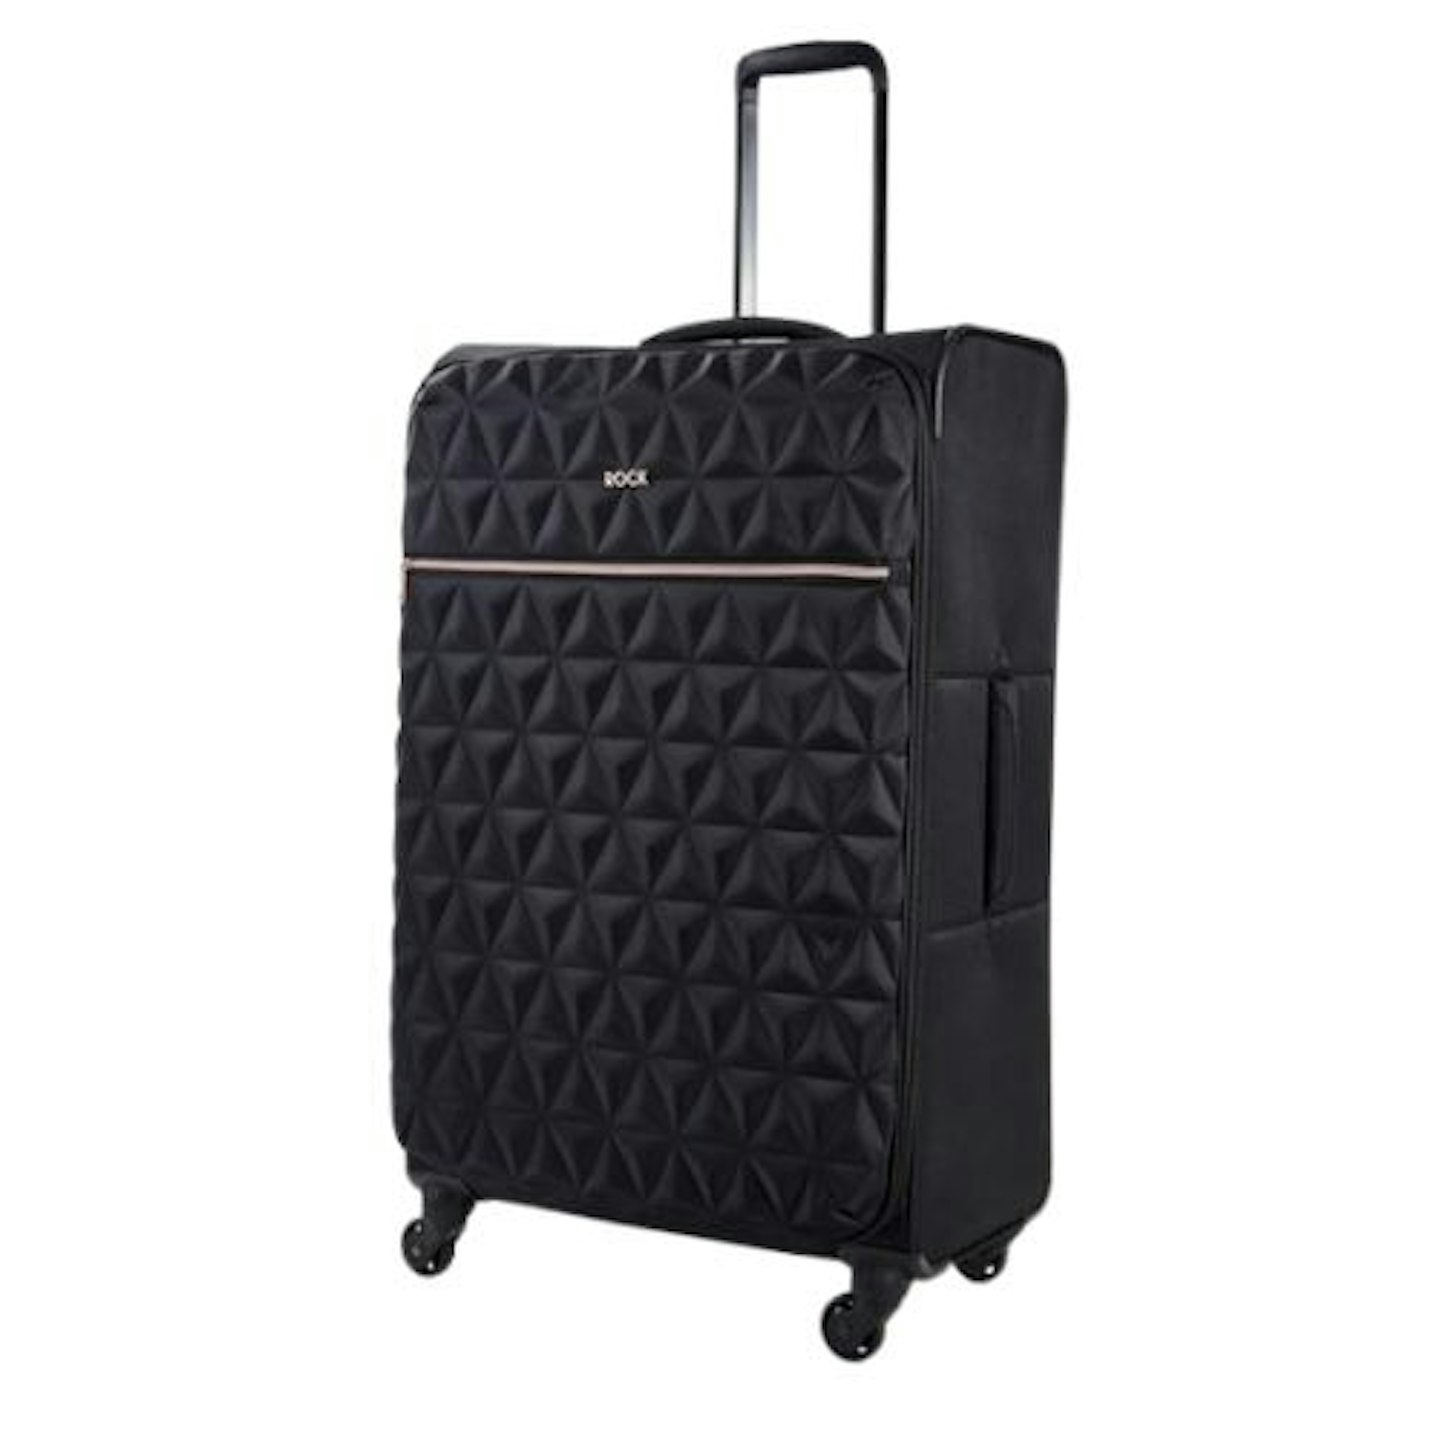 Rock Luggage Jewel 4 Wheel Soft Large Suitcase